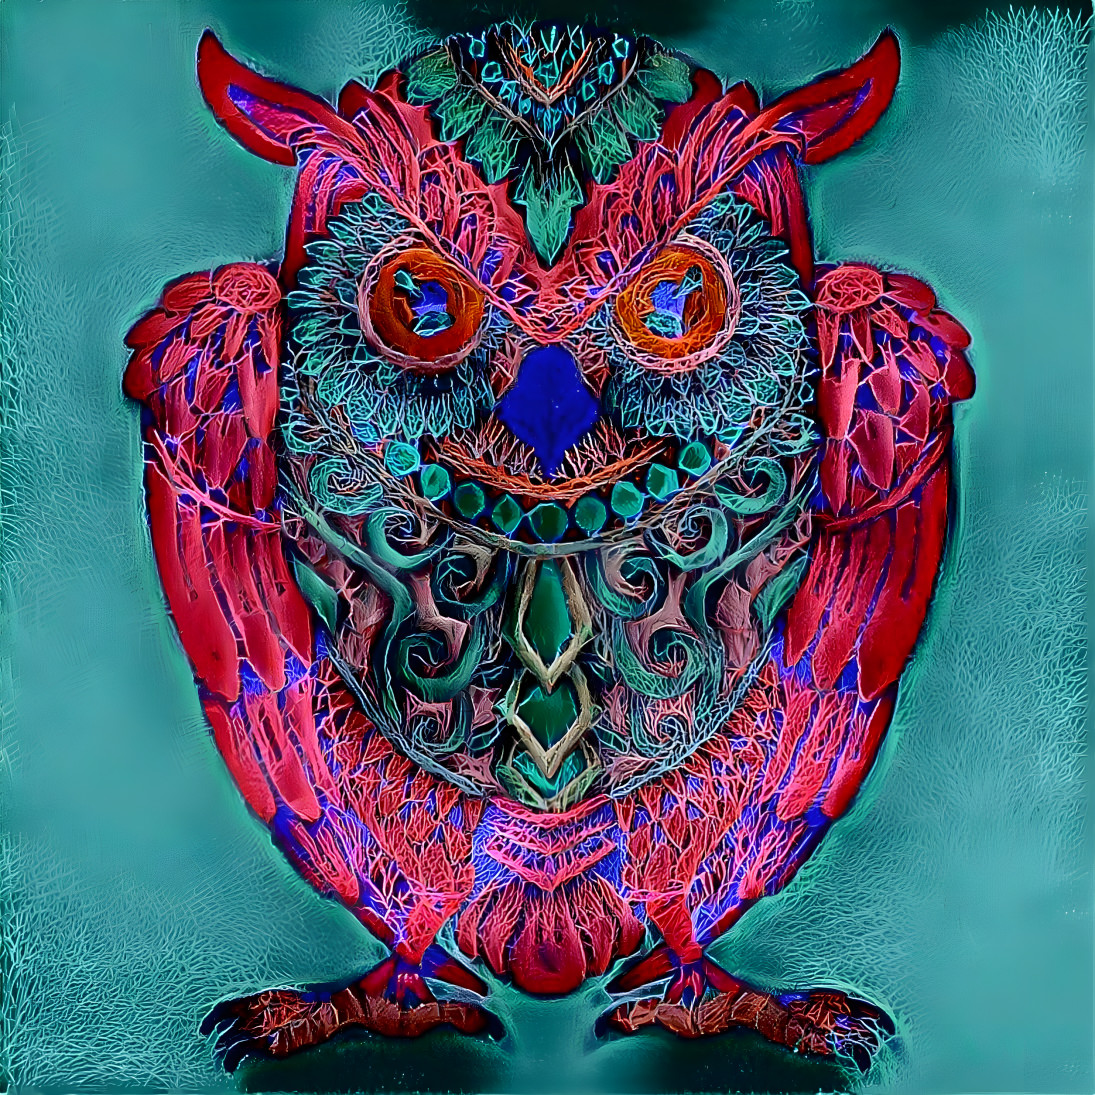 Pfancy owl boi